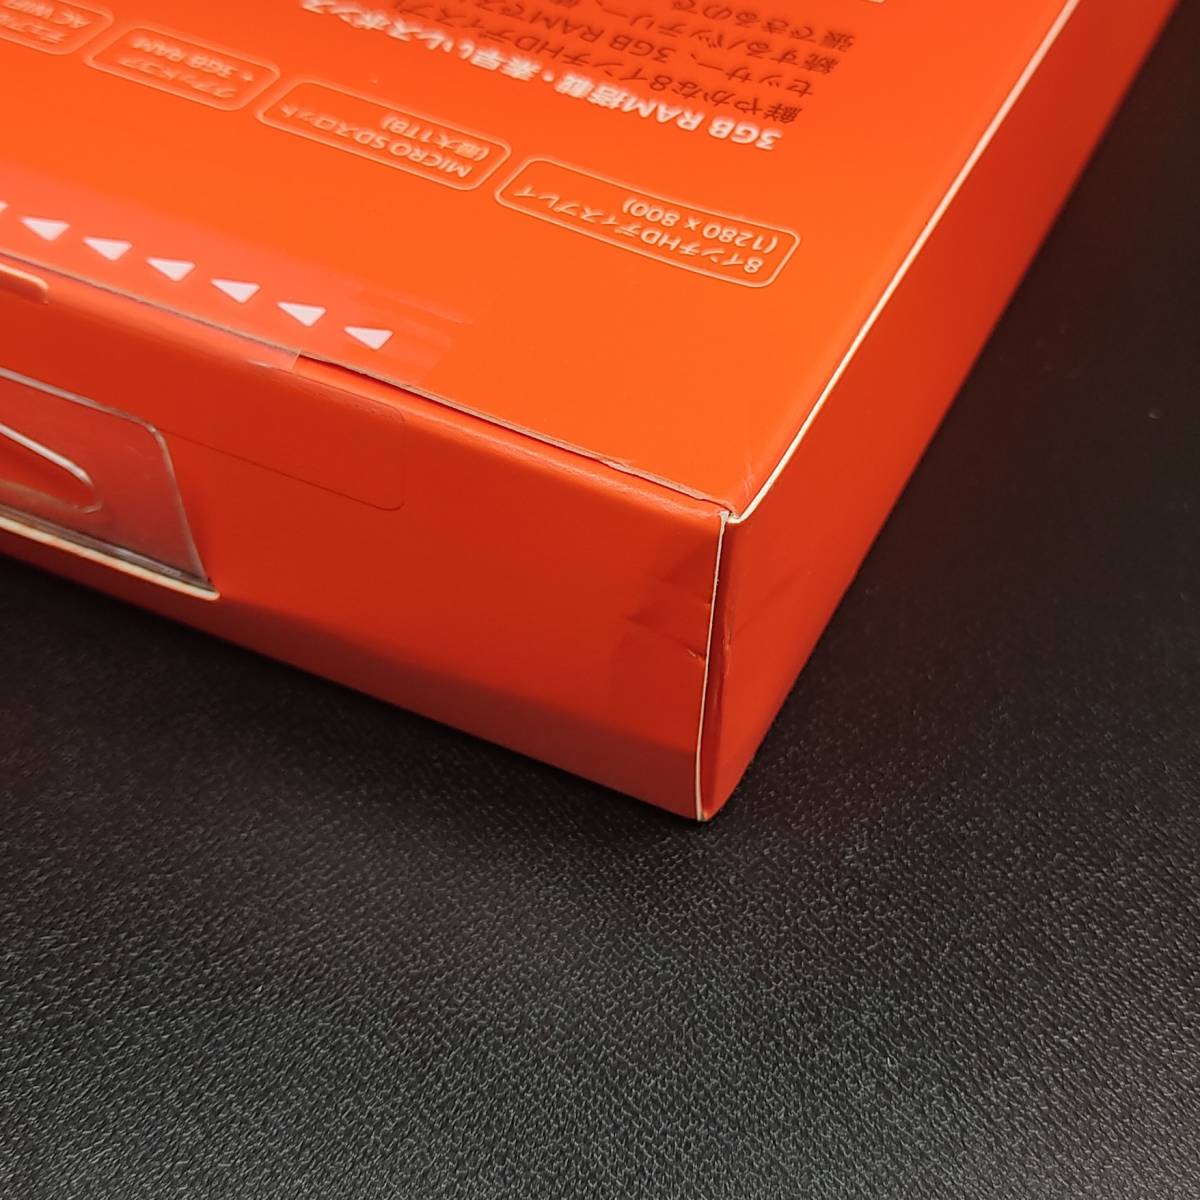 [箱にややダメージあり]Amazon Fire HD 8 PLUS タブレット スレート 32GB 第10世代